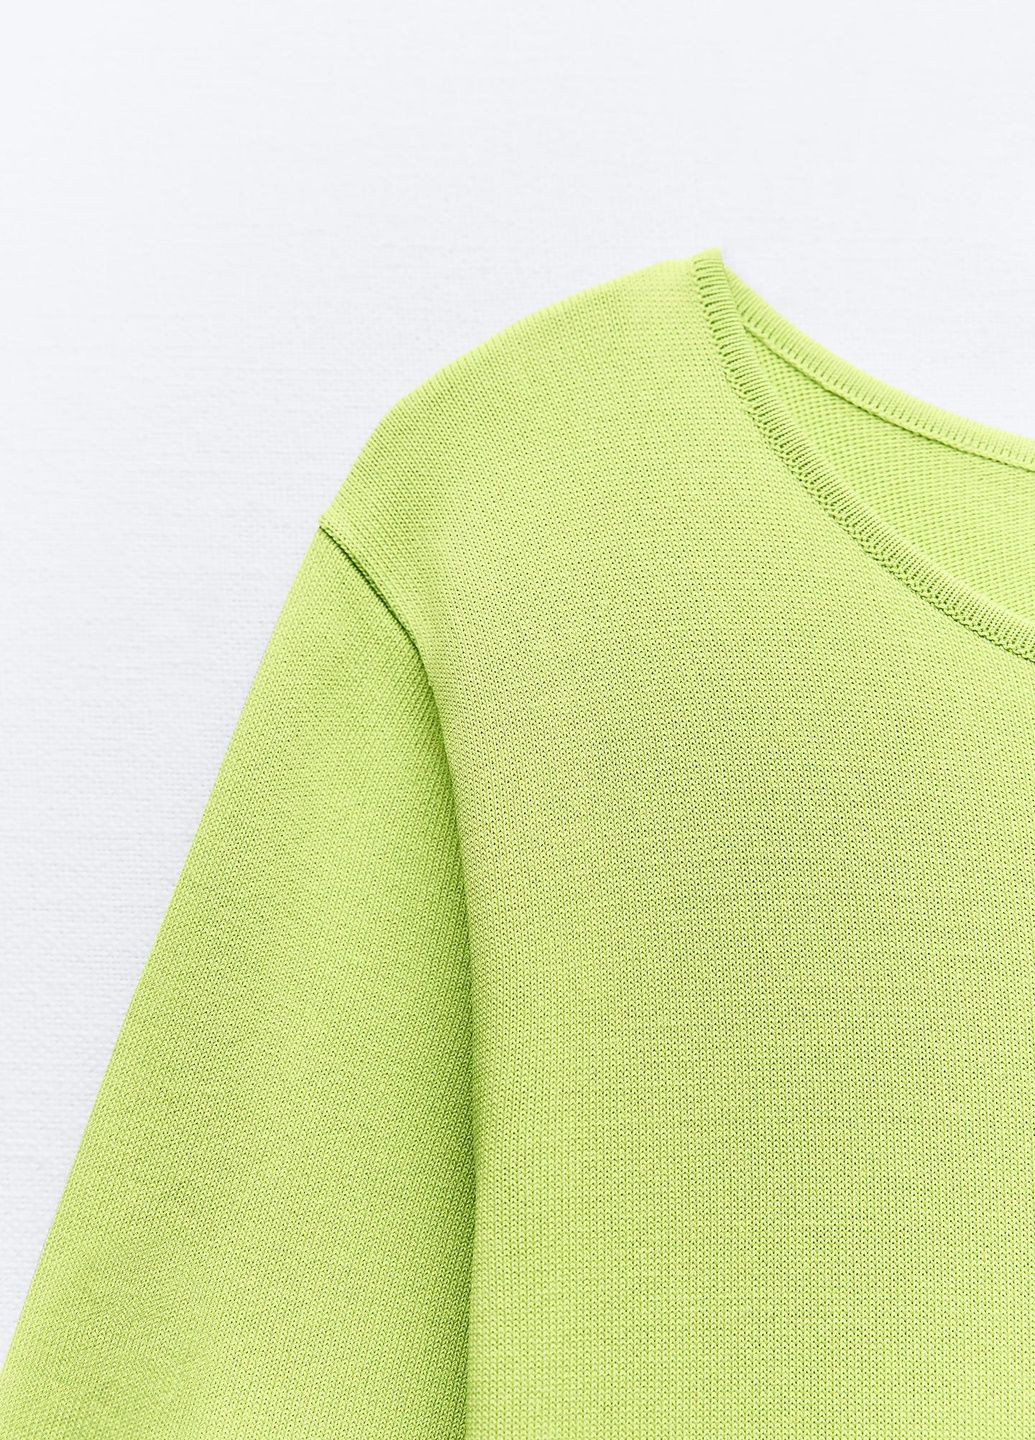 Светло-зеленое повседневный платье Zara однотонное